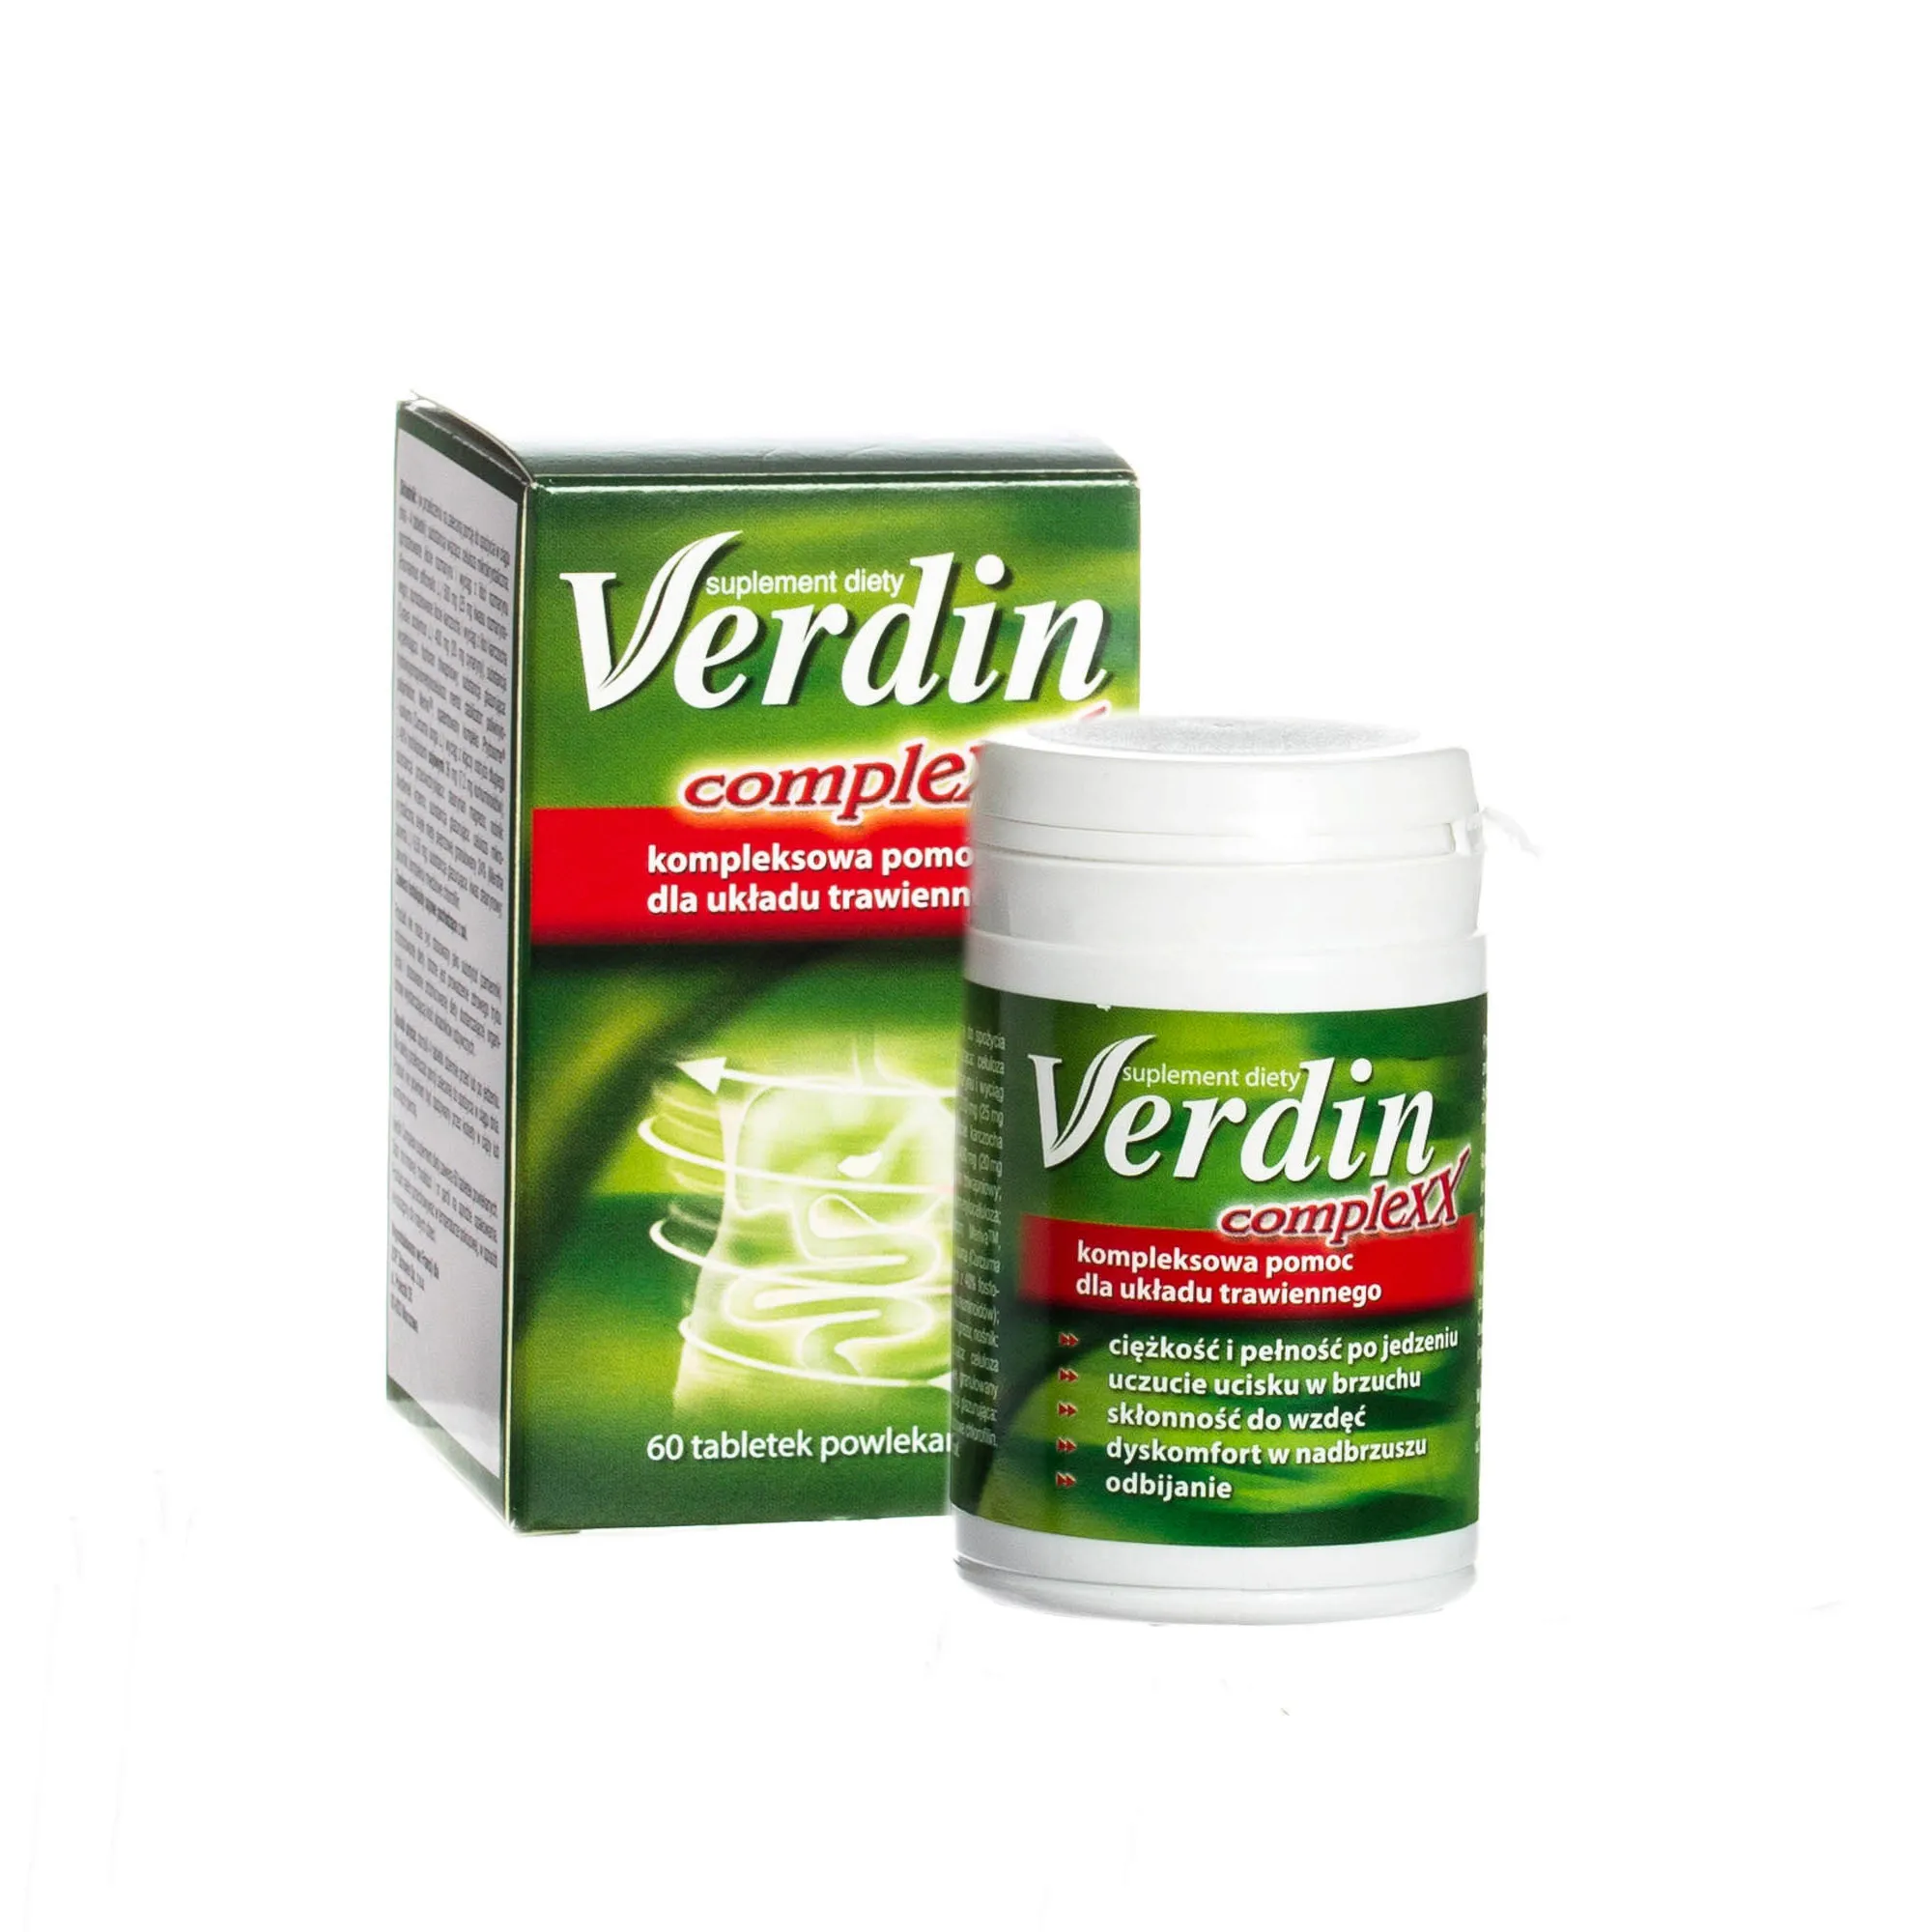 Verdin Complexx - suplement diety wspomagający pracę układu odpornościowego, 60 tabletek powlekanych. 